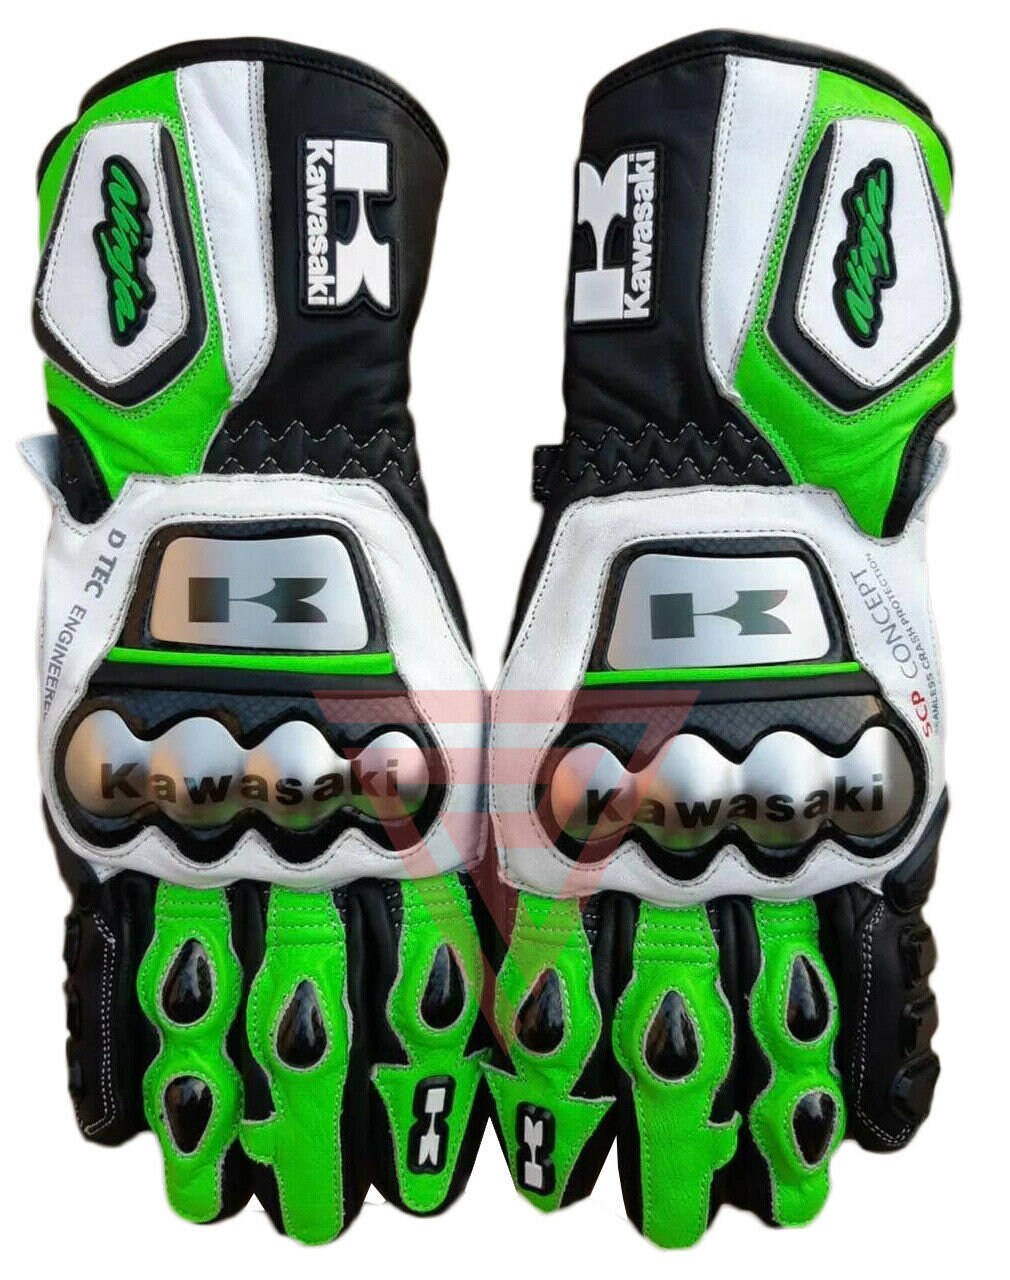 Nieuwe Kawasaki MOTORFIETS MOTORFIETS MOTOGPRacing Lederen Handschoenen Accessoires Handschoenen & wanten Sporthandschoenen 